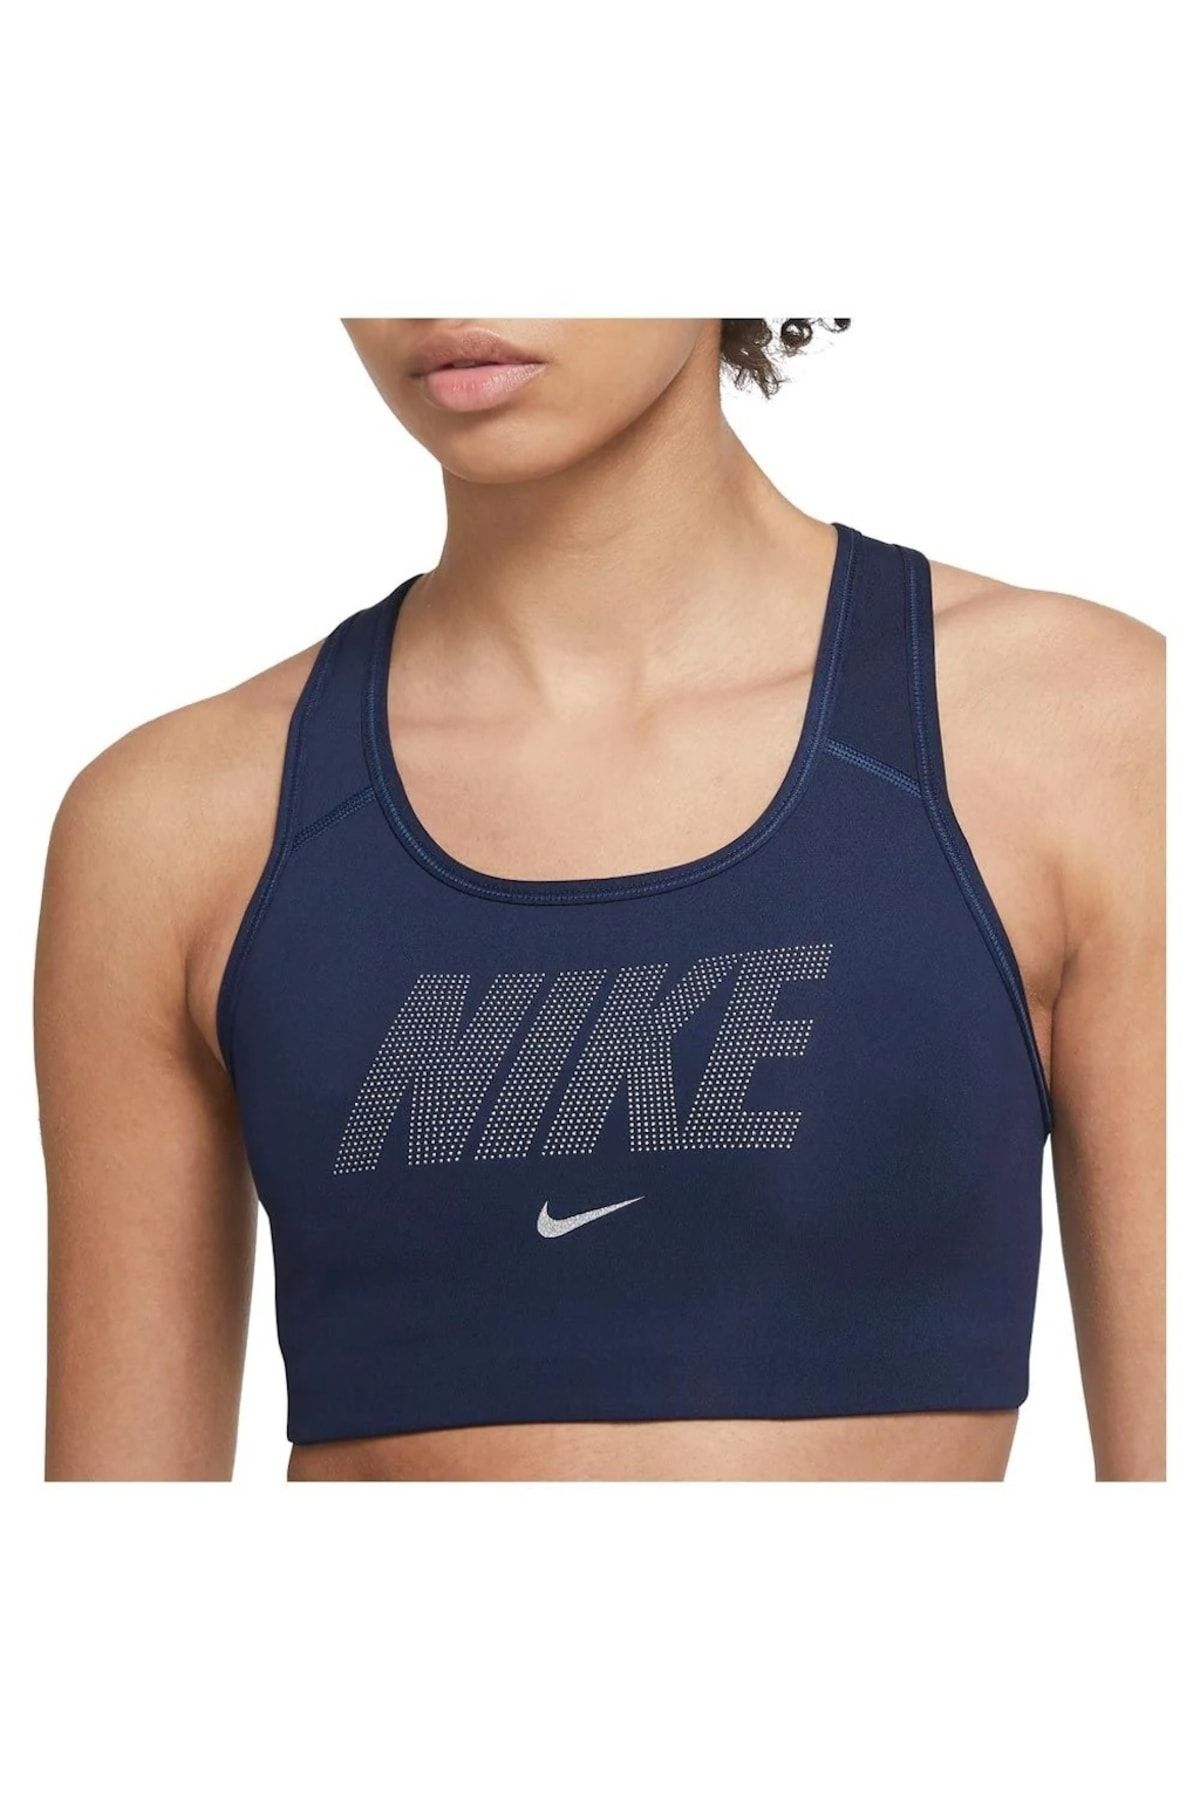 Nike Dri-fit Rival High-support Sports Women's Bra Aq4184-010 - Trendyol